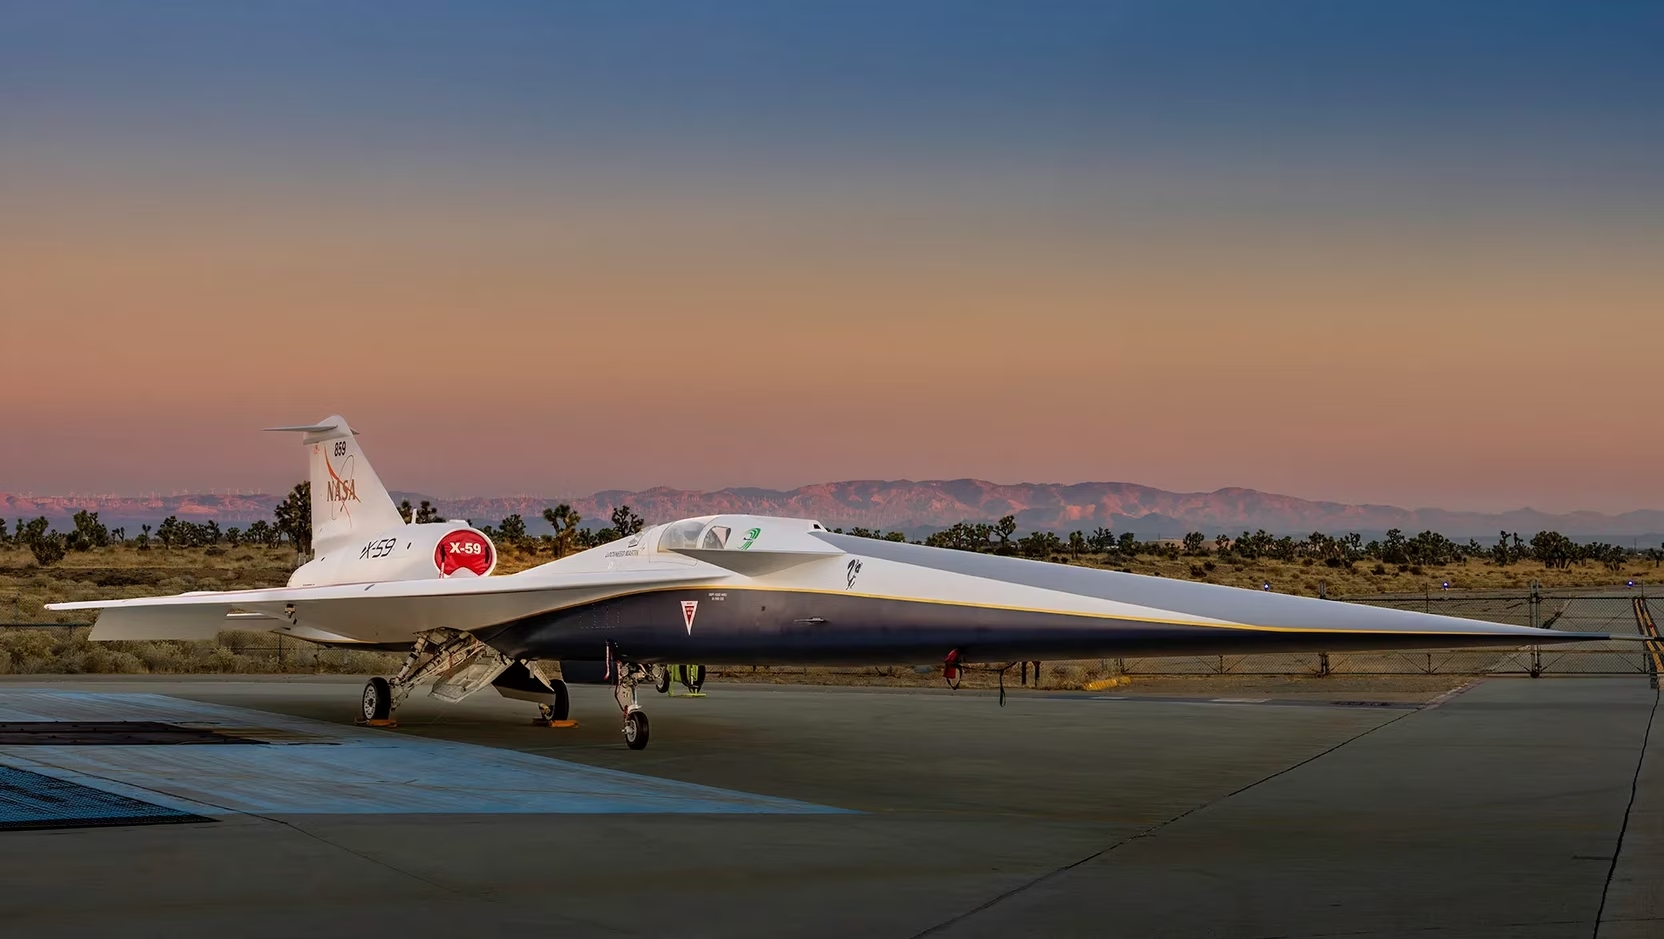 Il prototipo dell'X-59 presentato dalla NASA. Si nota il muso molto più lungo rispetto agli altri aerei.